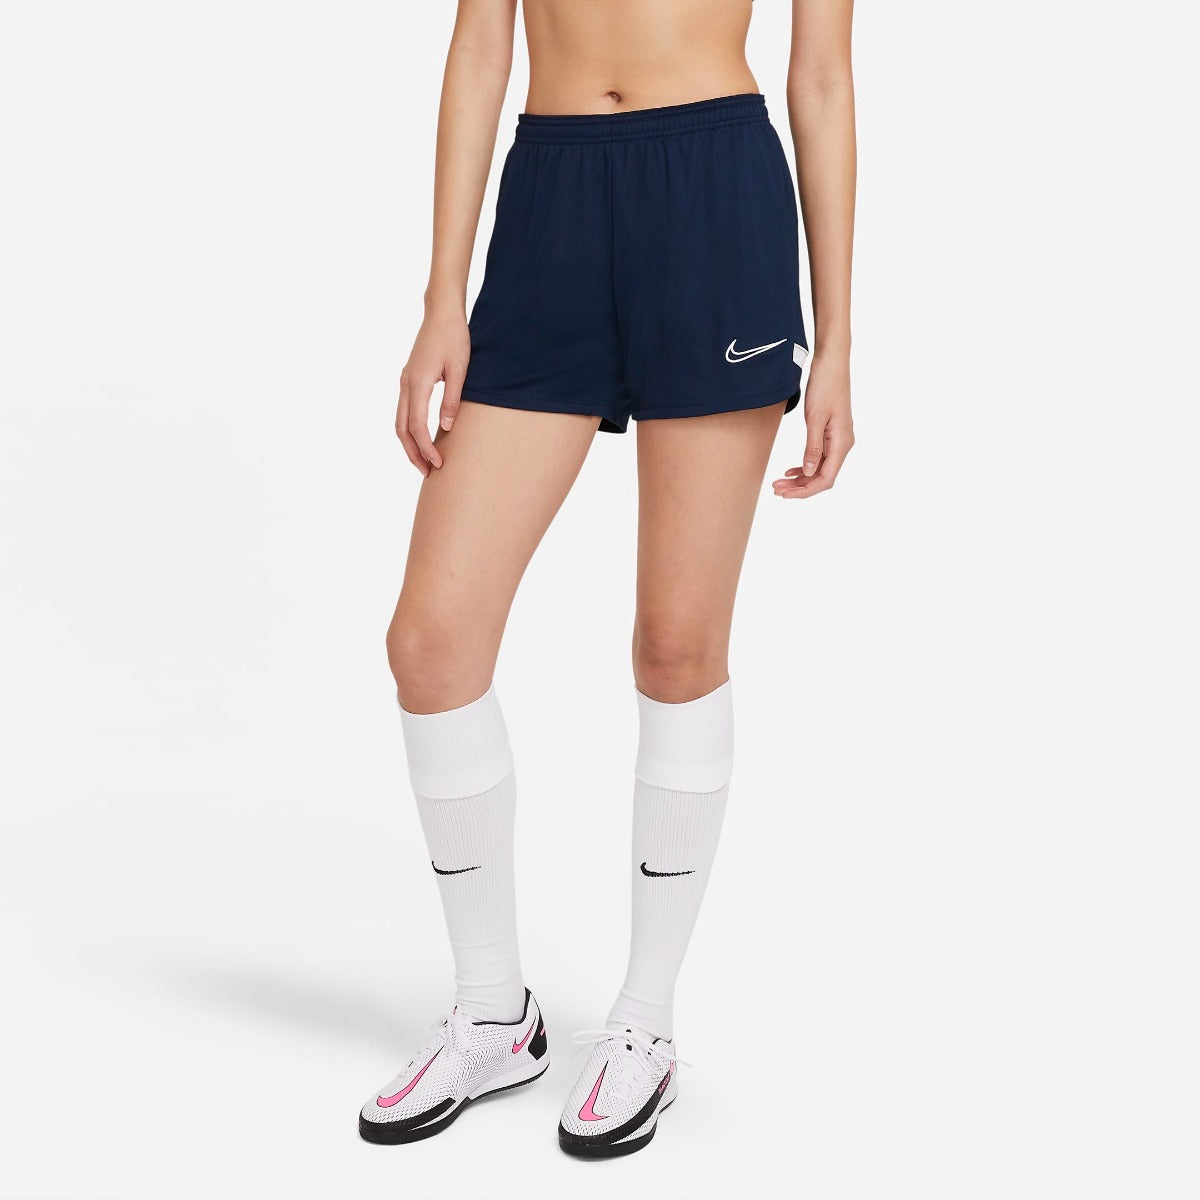 honderd Twinkelen in de buurt Nike Women Academy 21 Shorts